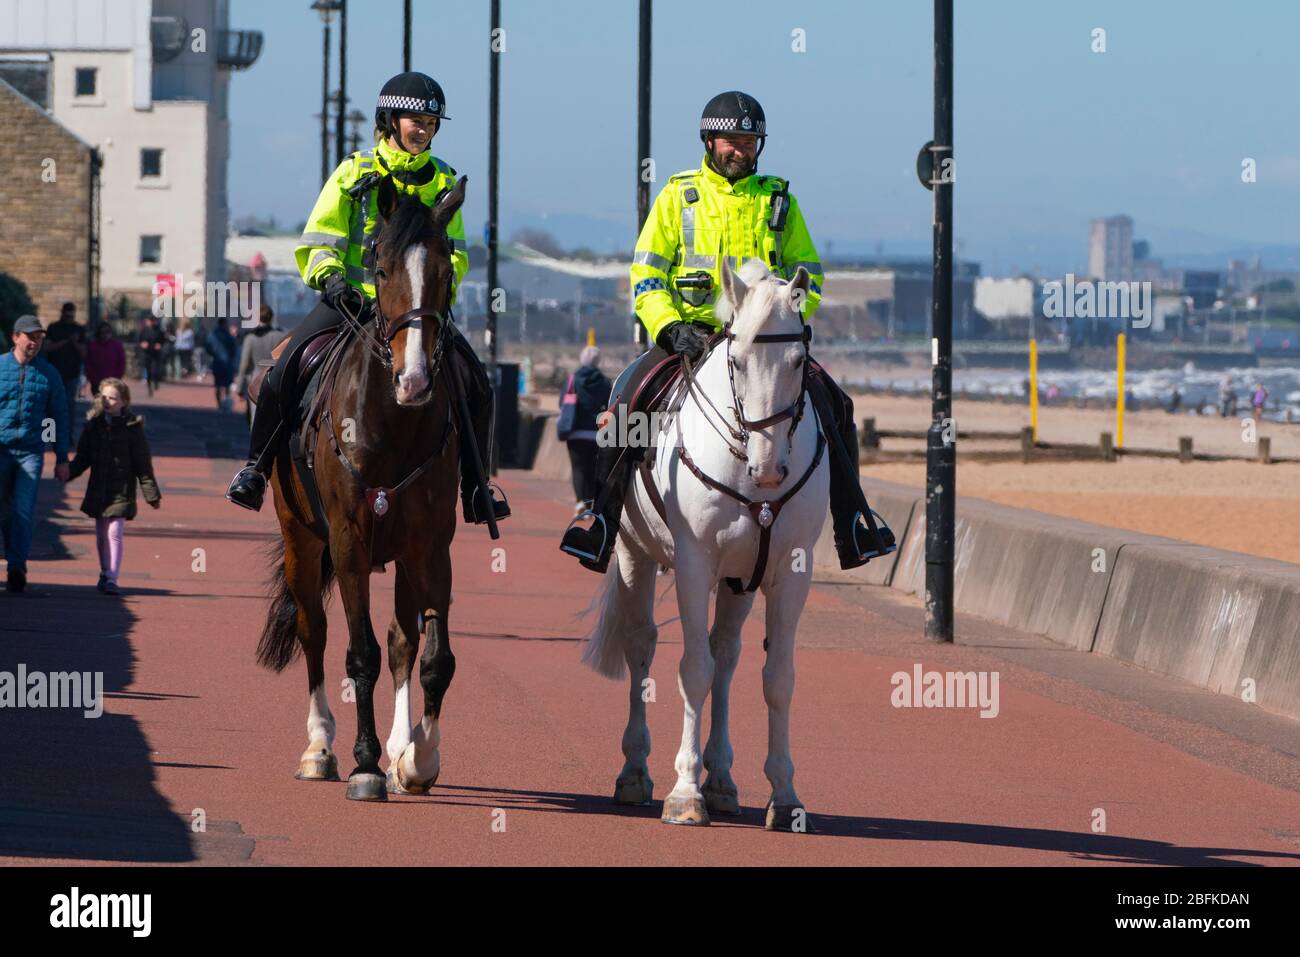 Portobello, Scozia, Regno Unito. 19 aprile 2020. Cavalli di polizia montati Logie e Edimburgo - in bianco, pattugliare la passeggiata e la spiaggia a Portobello la domenica pomeriggio. Iain Masterton/Alamy Live News Foto Stock